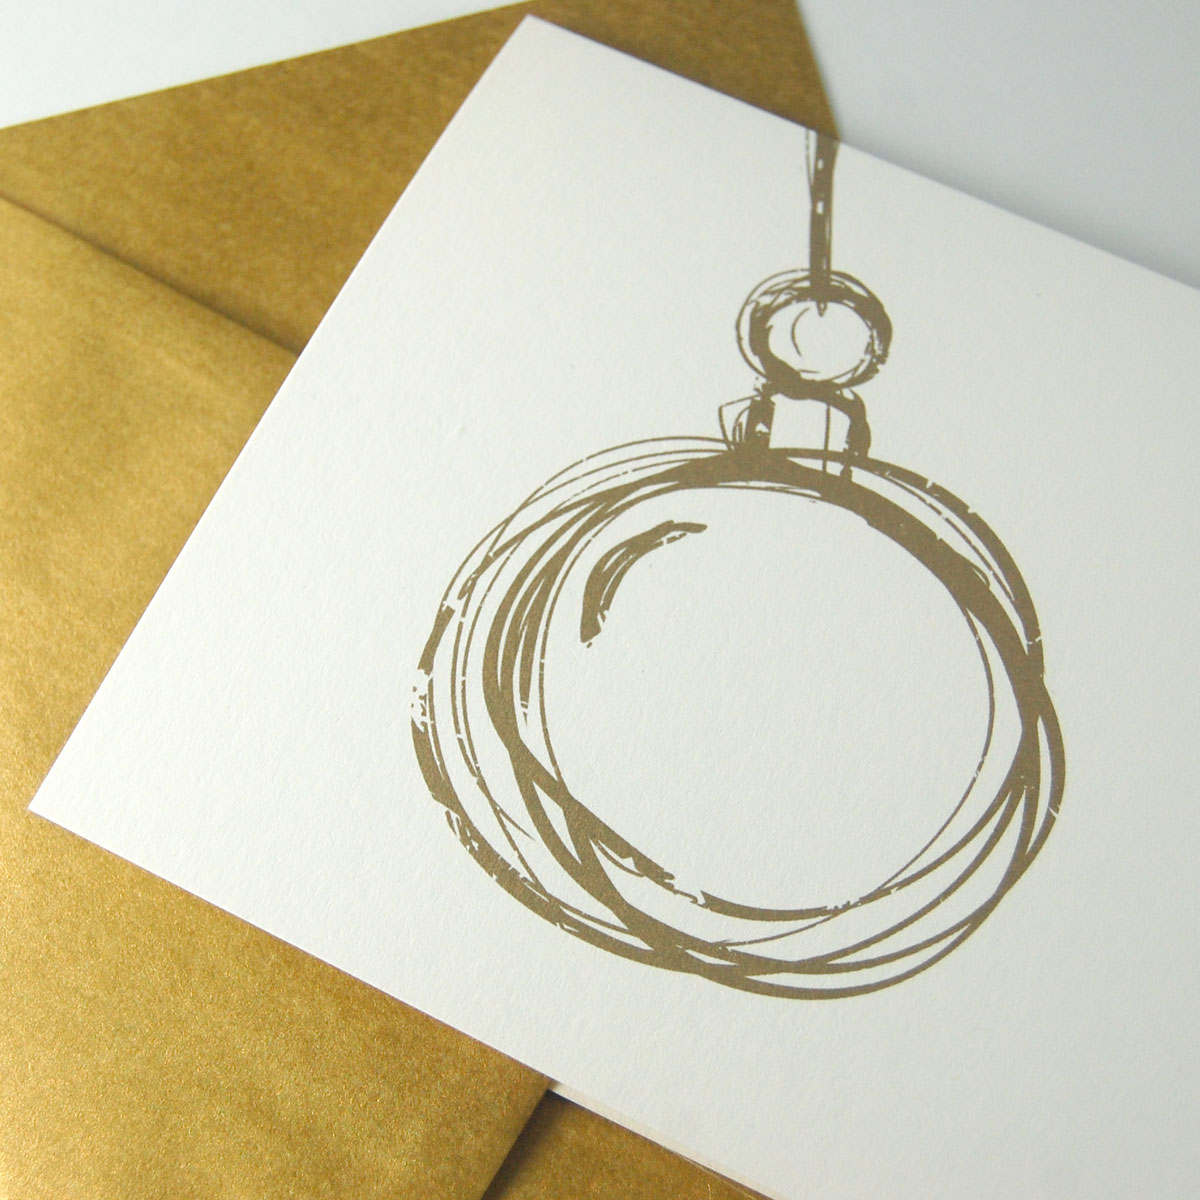 Schwingende Christbaumkugel, edle Recycling-Weihnachtskarten mit goldenem Umschlag